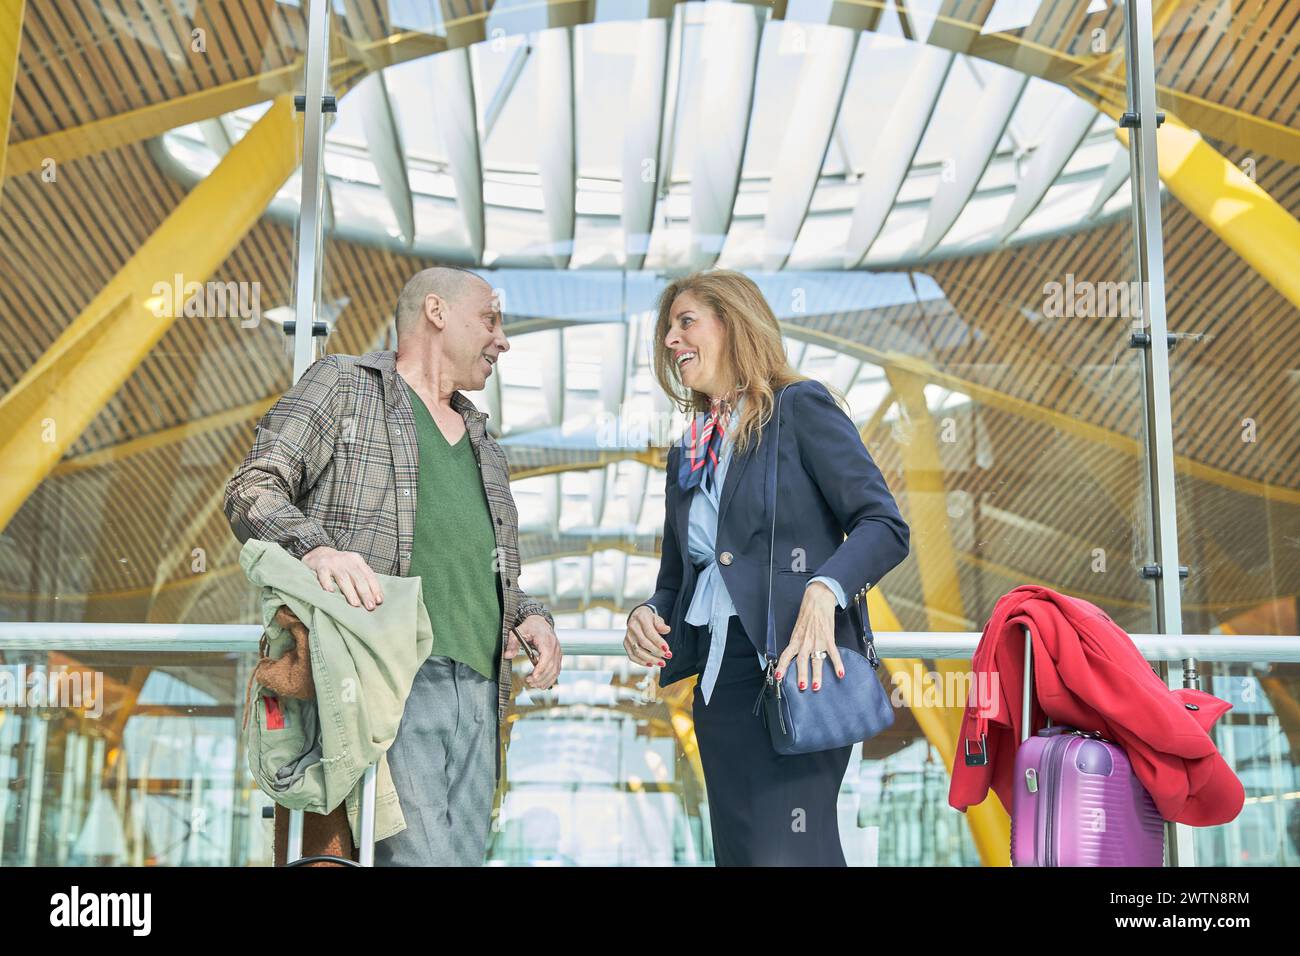 Reisenpaar mittleren Alters, das sich am Busbahnhof oder Flughafen unterhalten und auf eine Reise oder Flitterwochen wartet Stockfoto